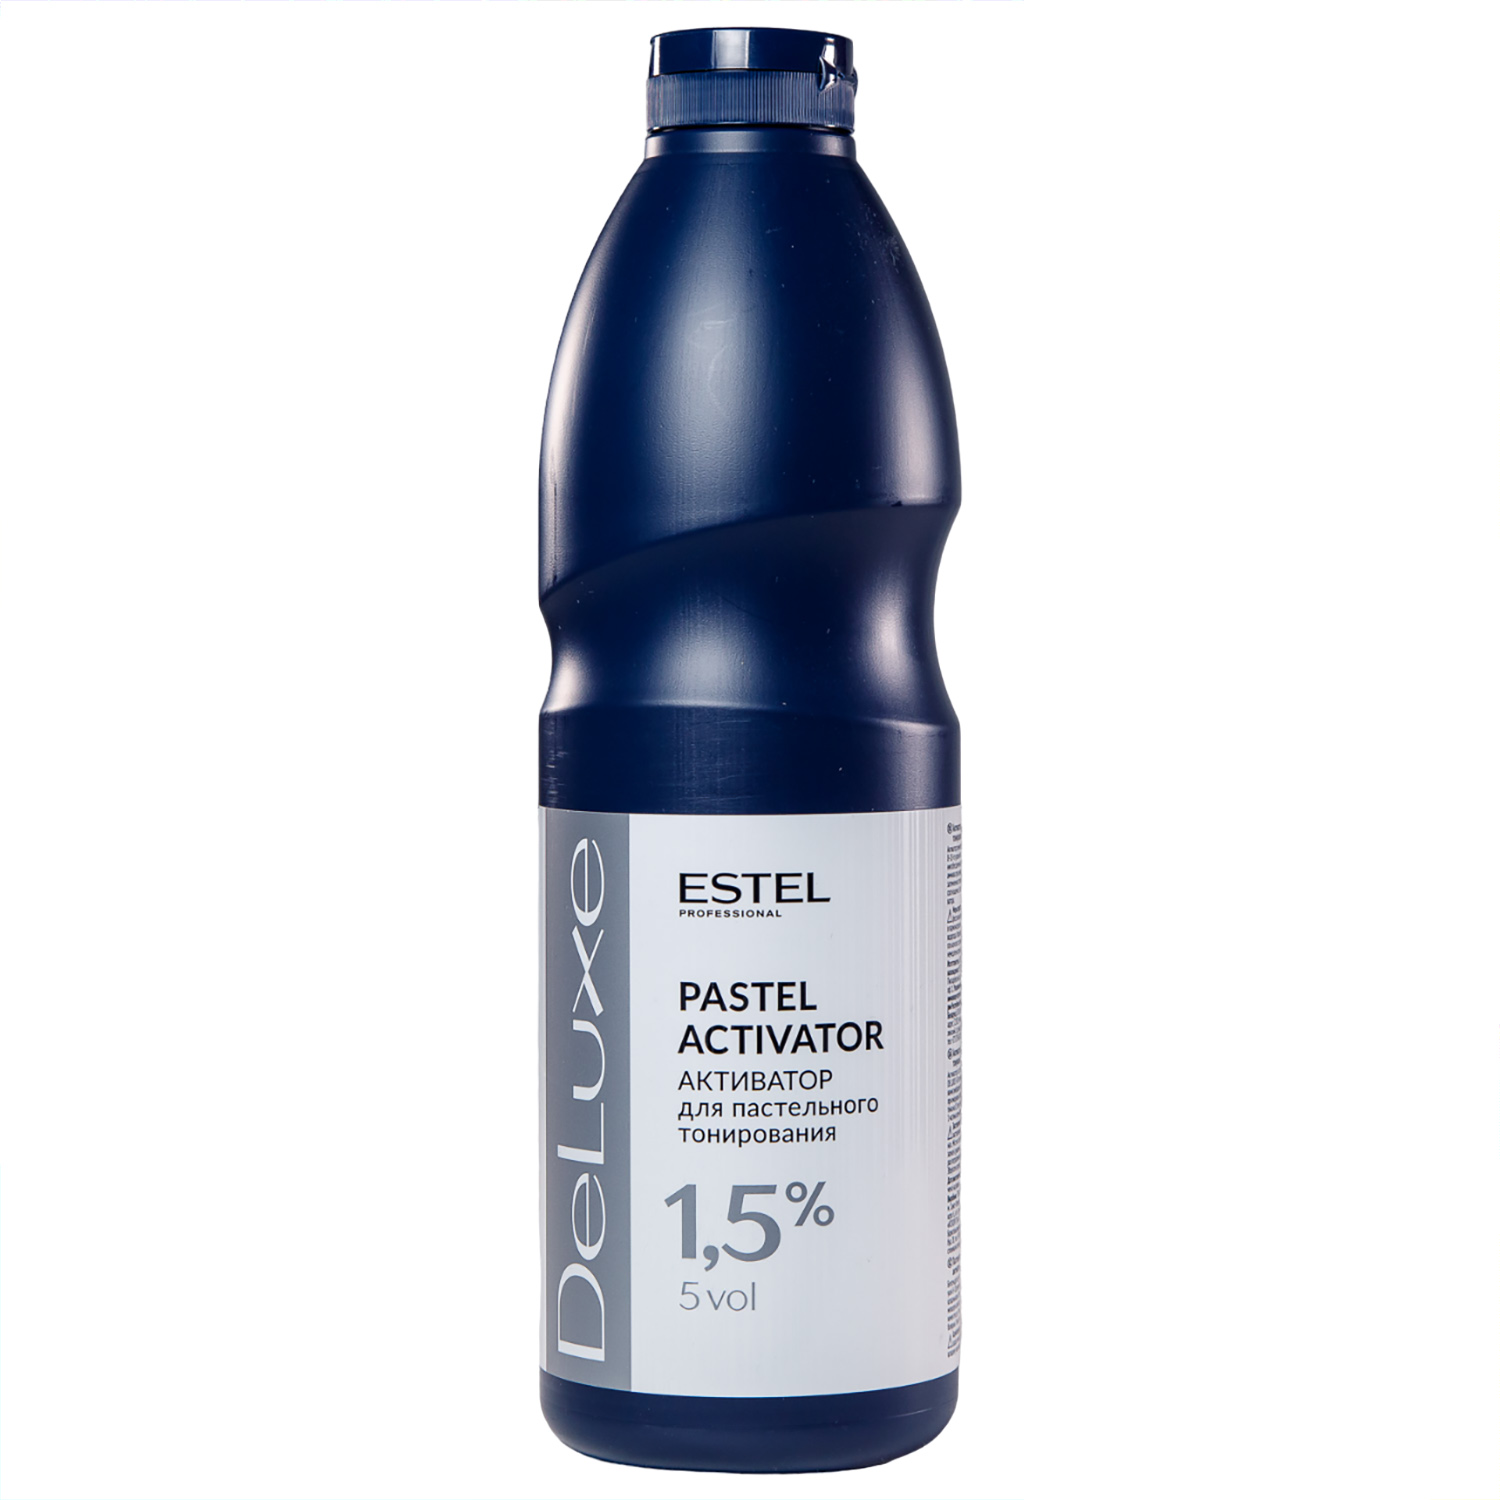 Estel Активатор 1,5% для пастельного тонирования, 1000 мл (Estel, De luxe) estel активатор de luxe 1 5% для пастельного тонирования 1000 мл